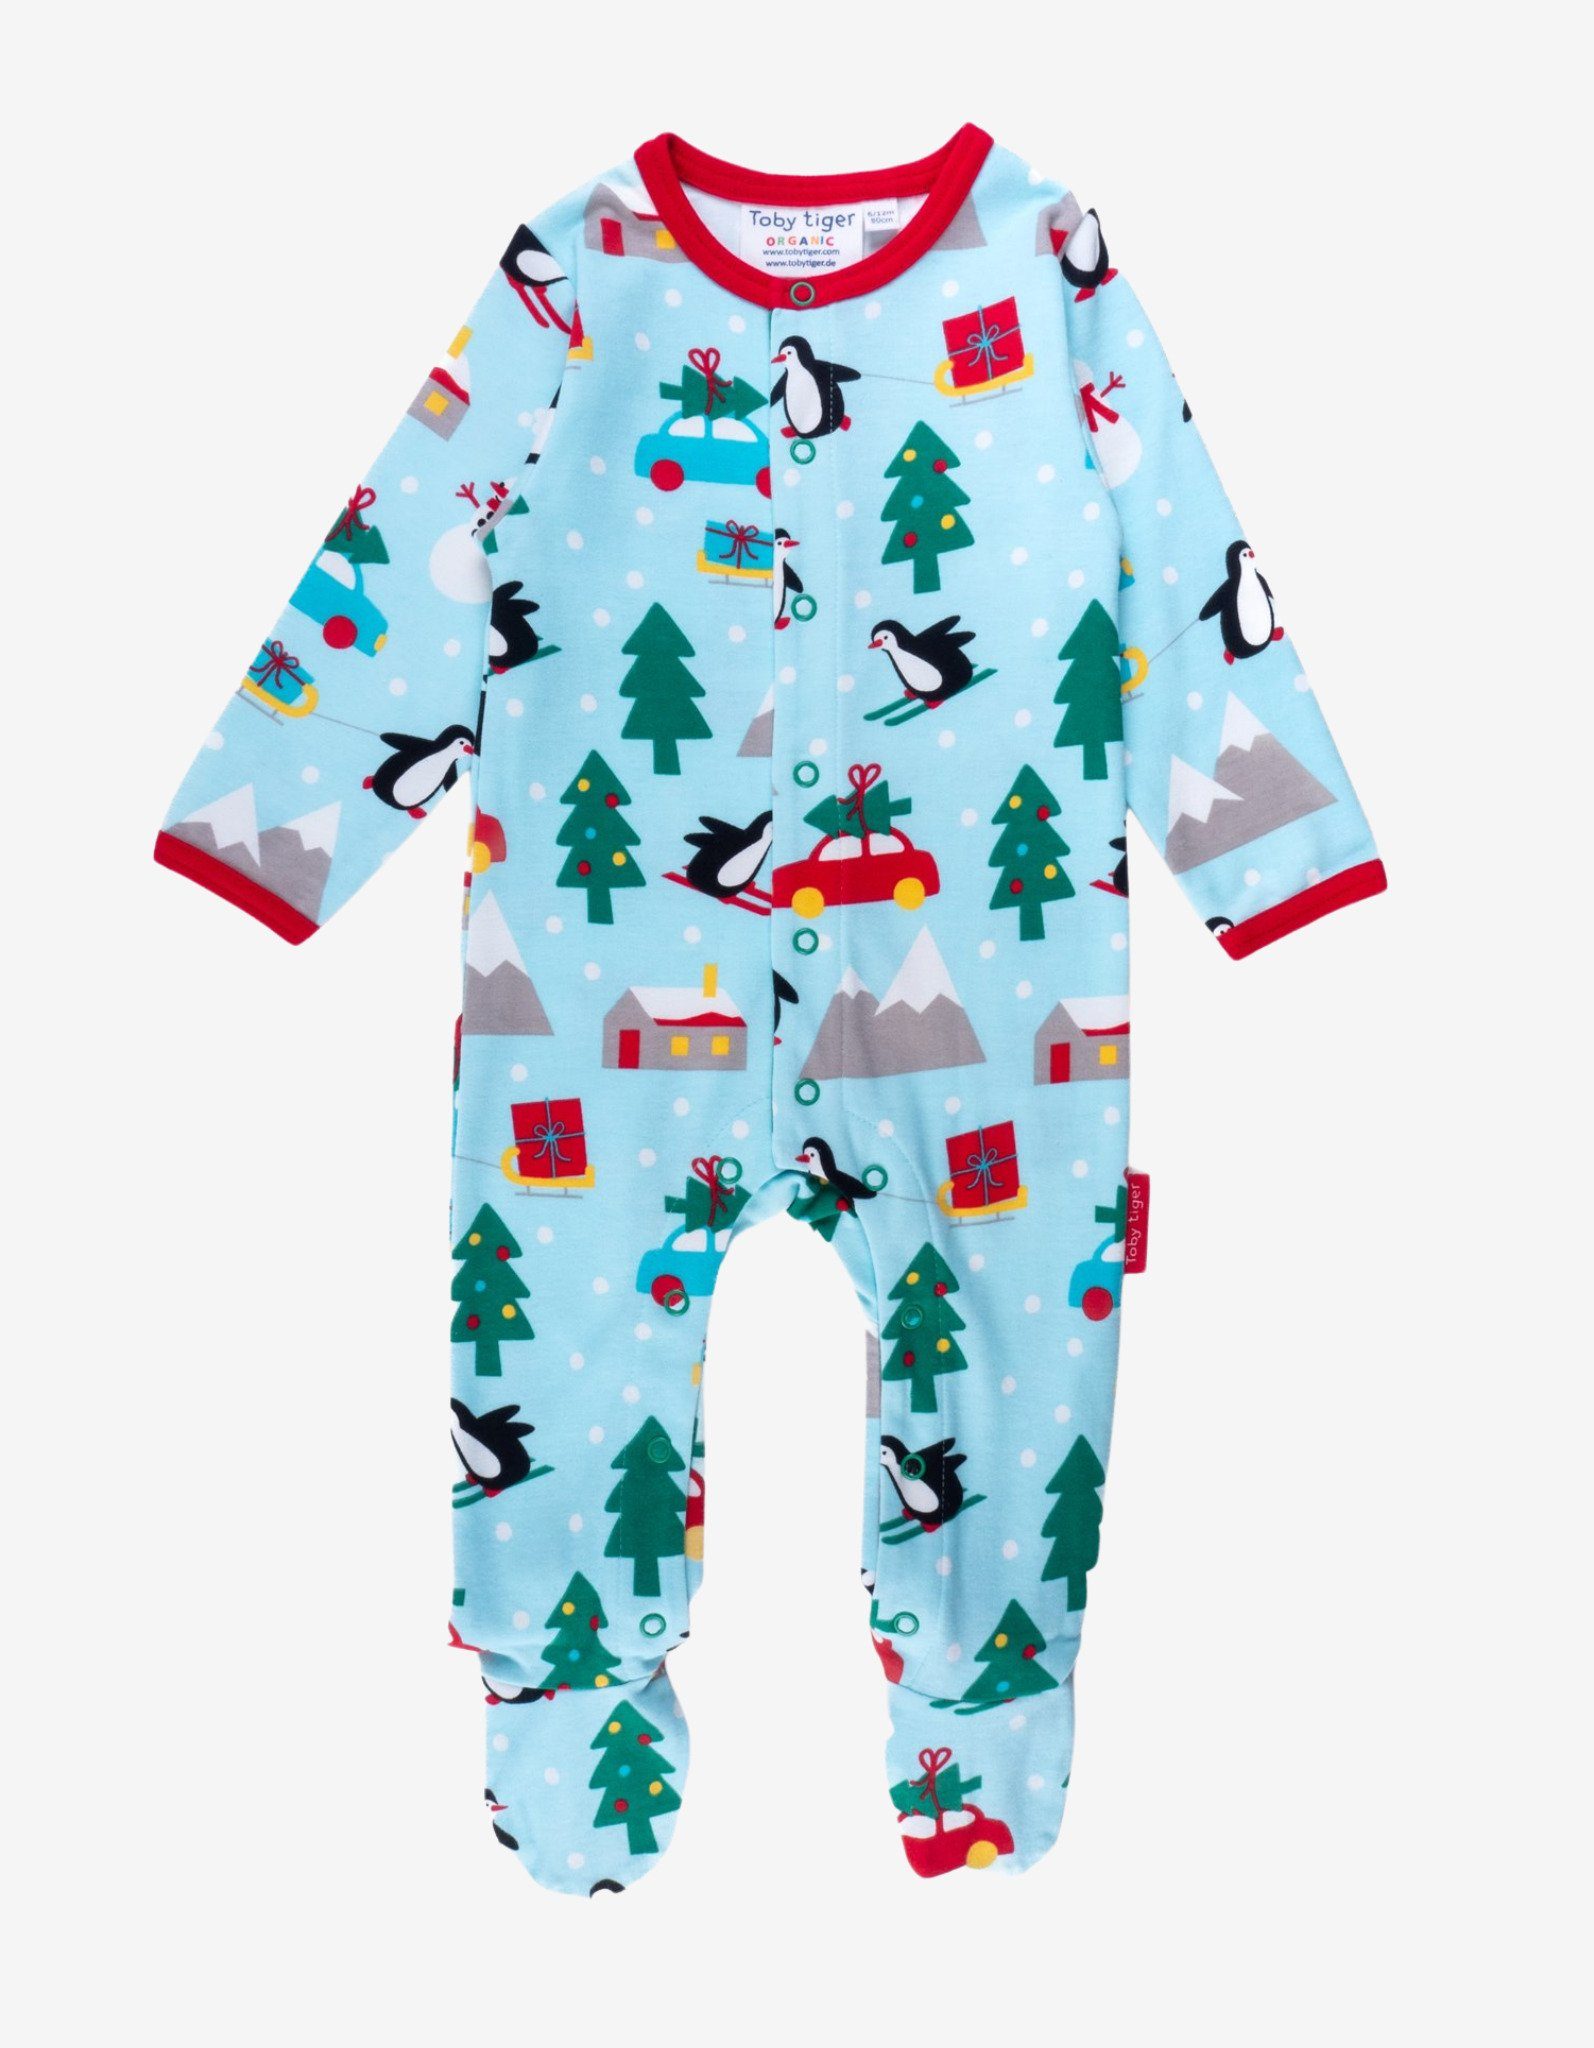 Tiger Schlafanzug mit weihnachtlichem Toby Schlafanzug Print